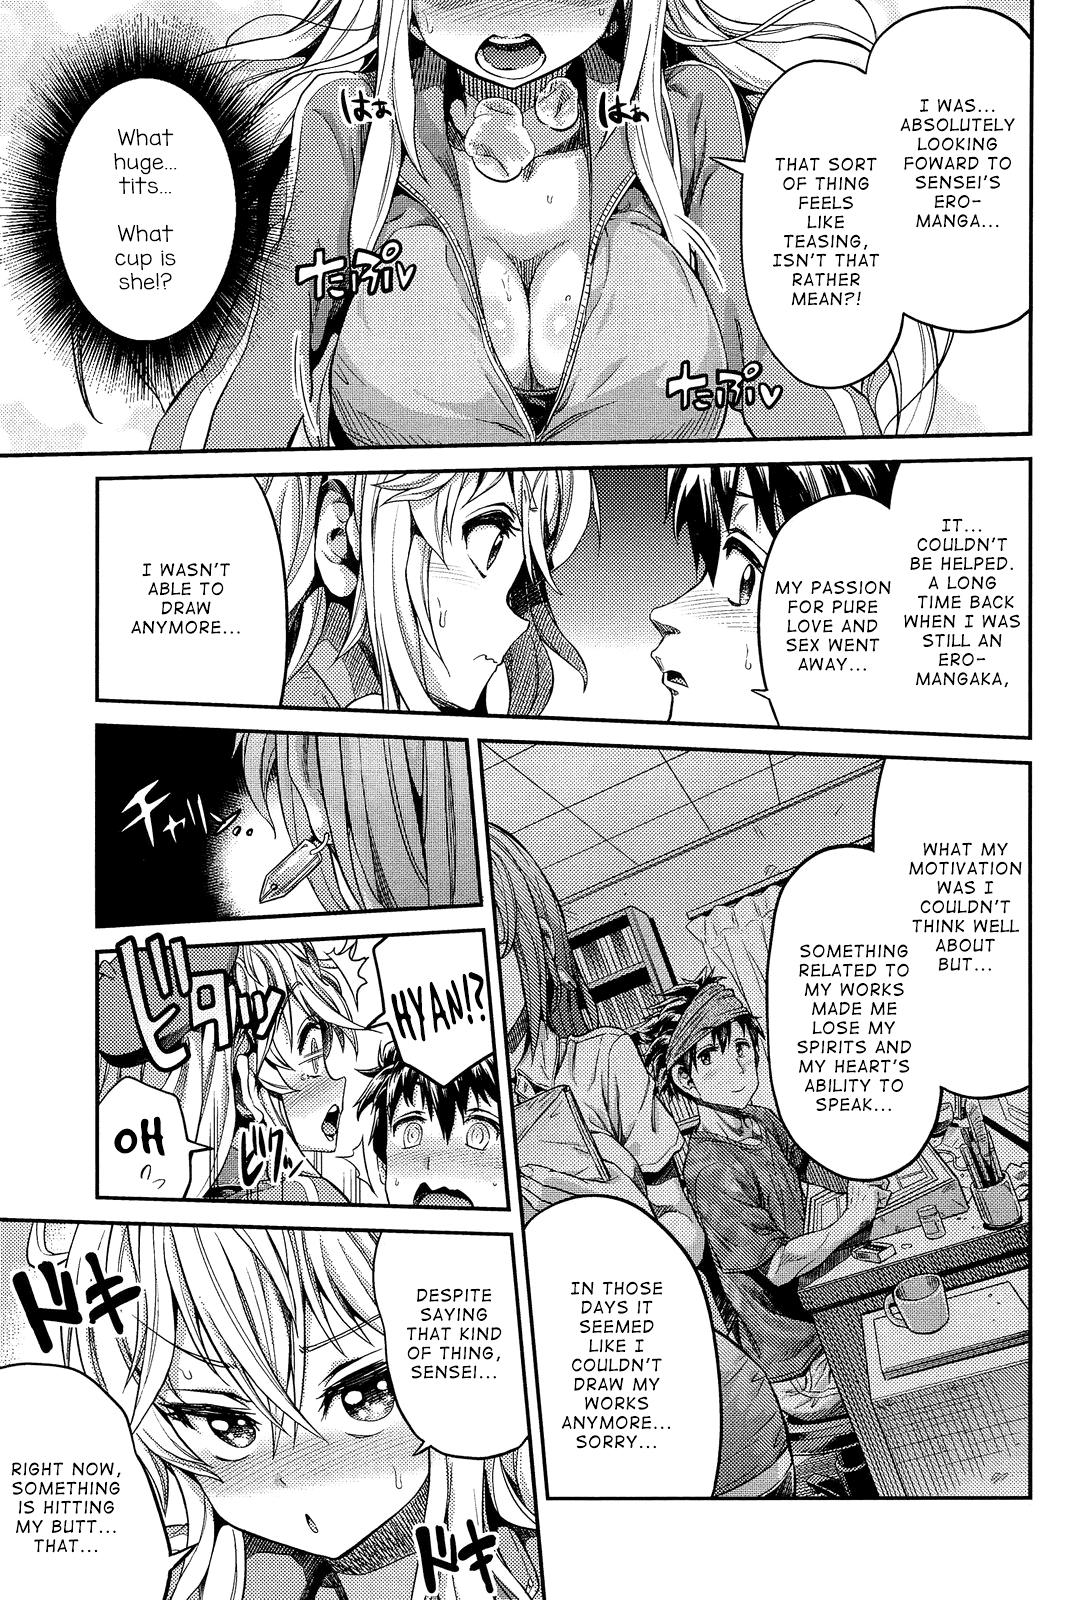 Sucking Man × Koi Ero Manga de Hajimaru Koi no Plot Hot Women Having Sex - Page 5